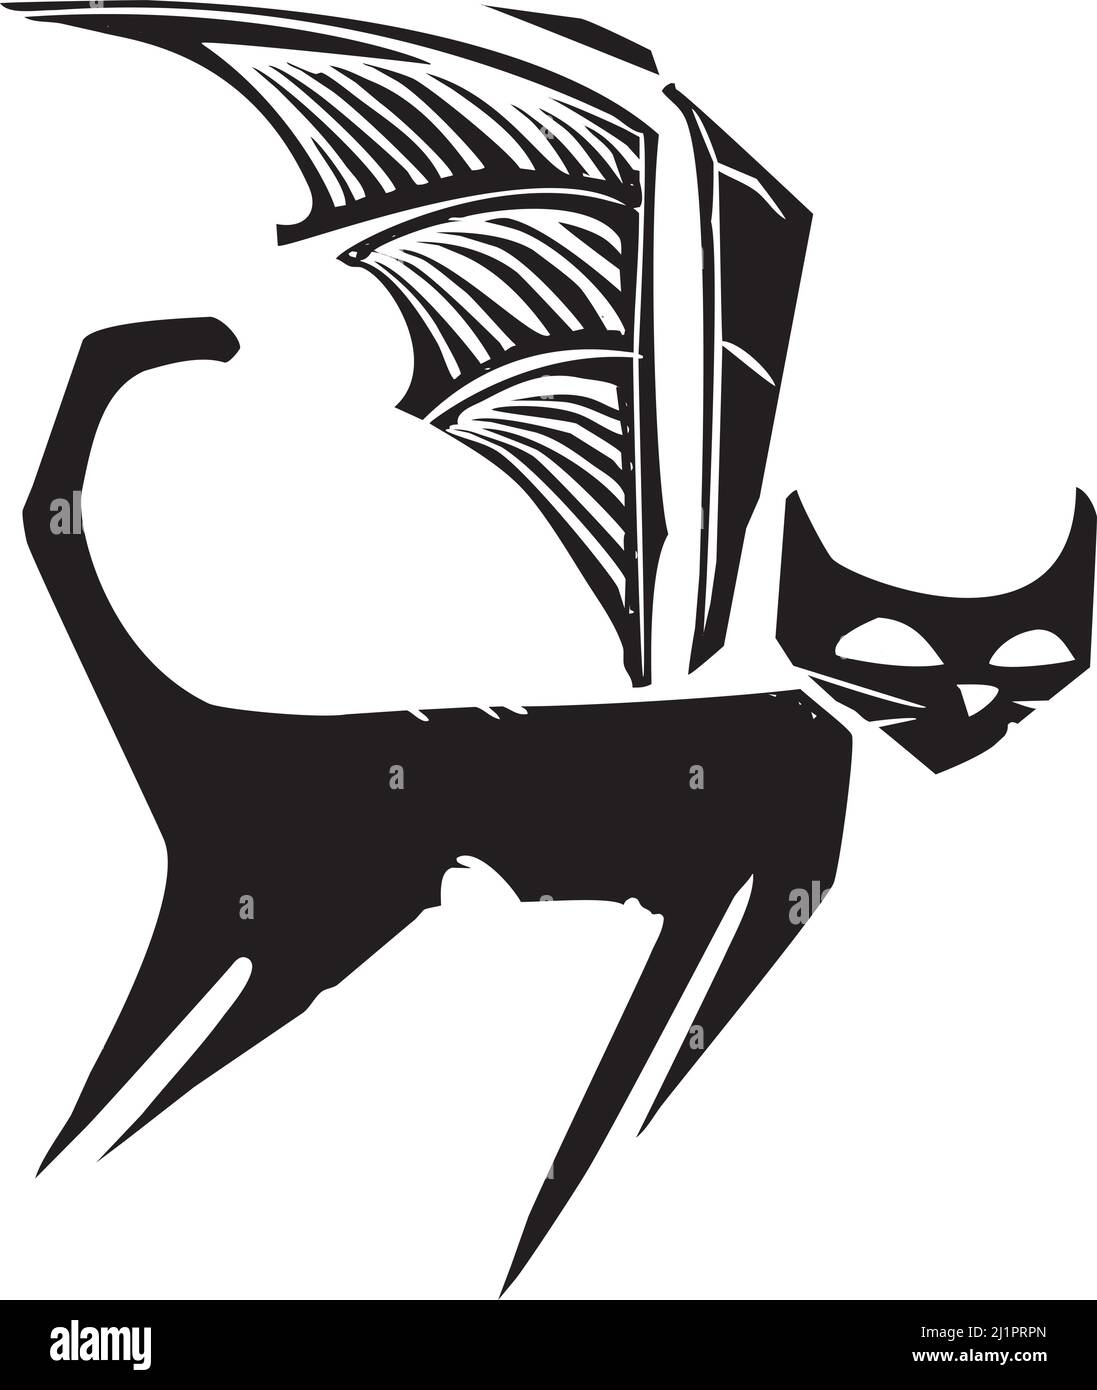 Imagen en madera de un gato con alas de murciélago en un estilo expresionista. Ilustración del Vector